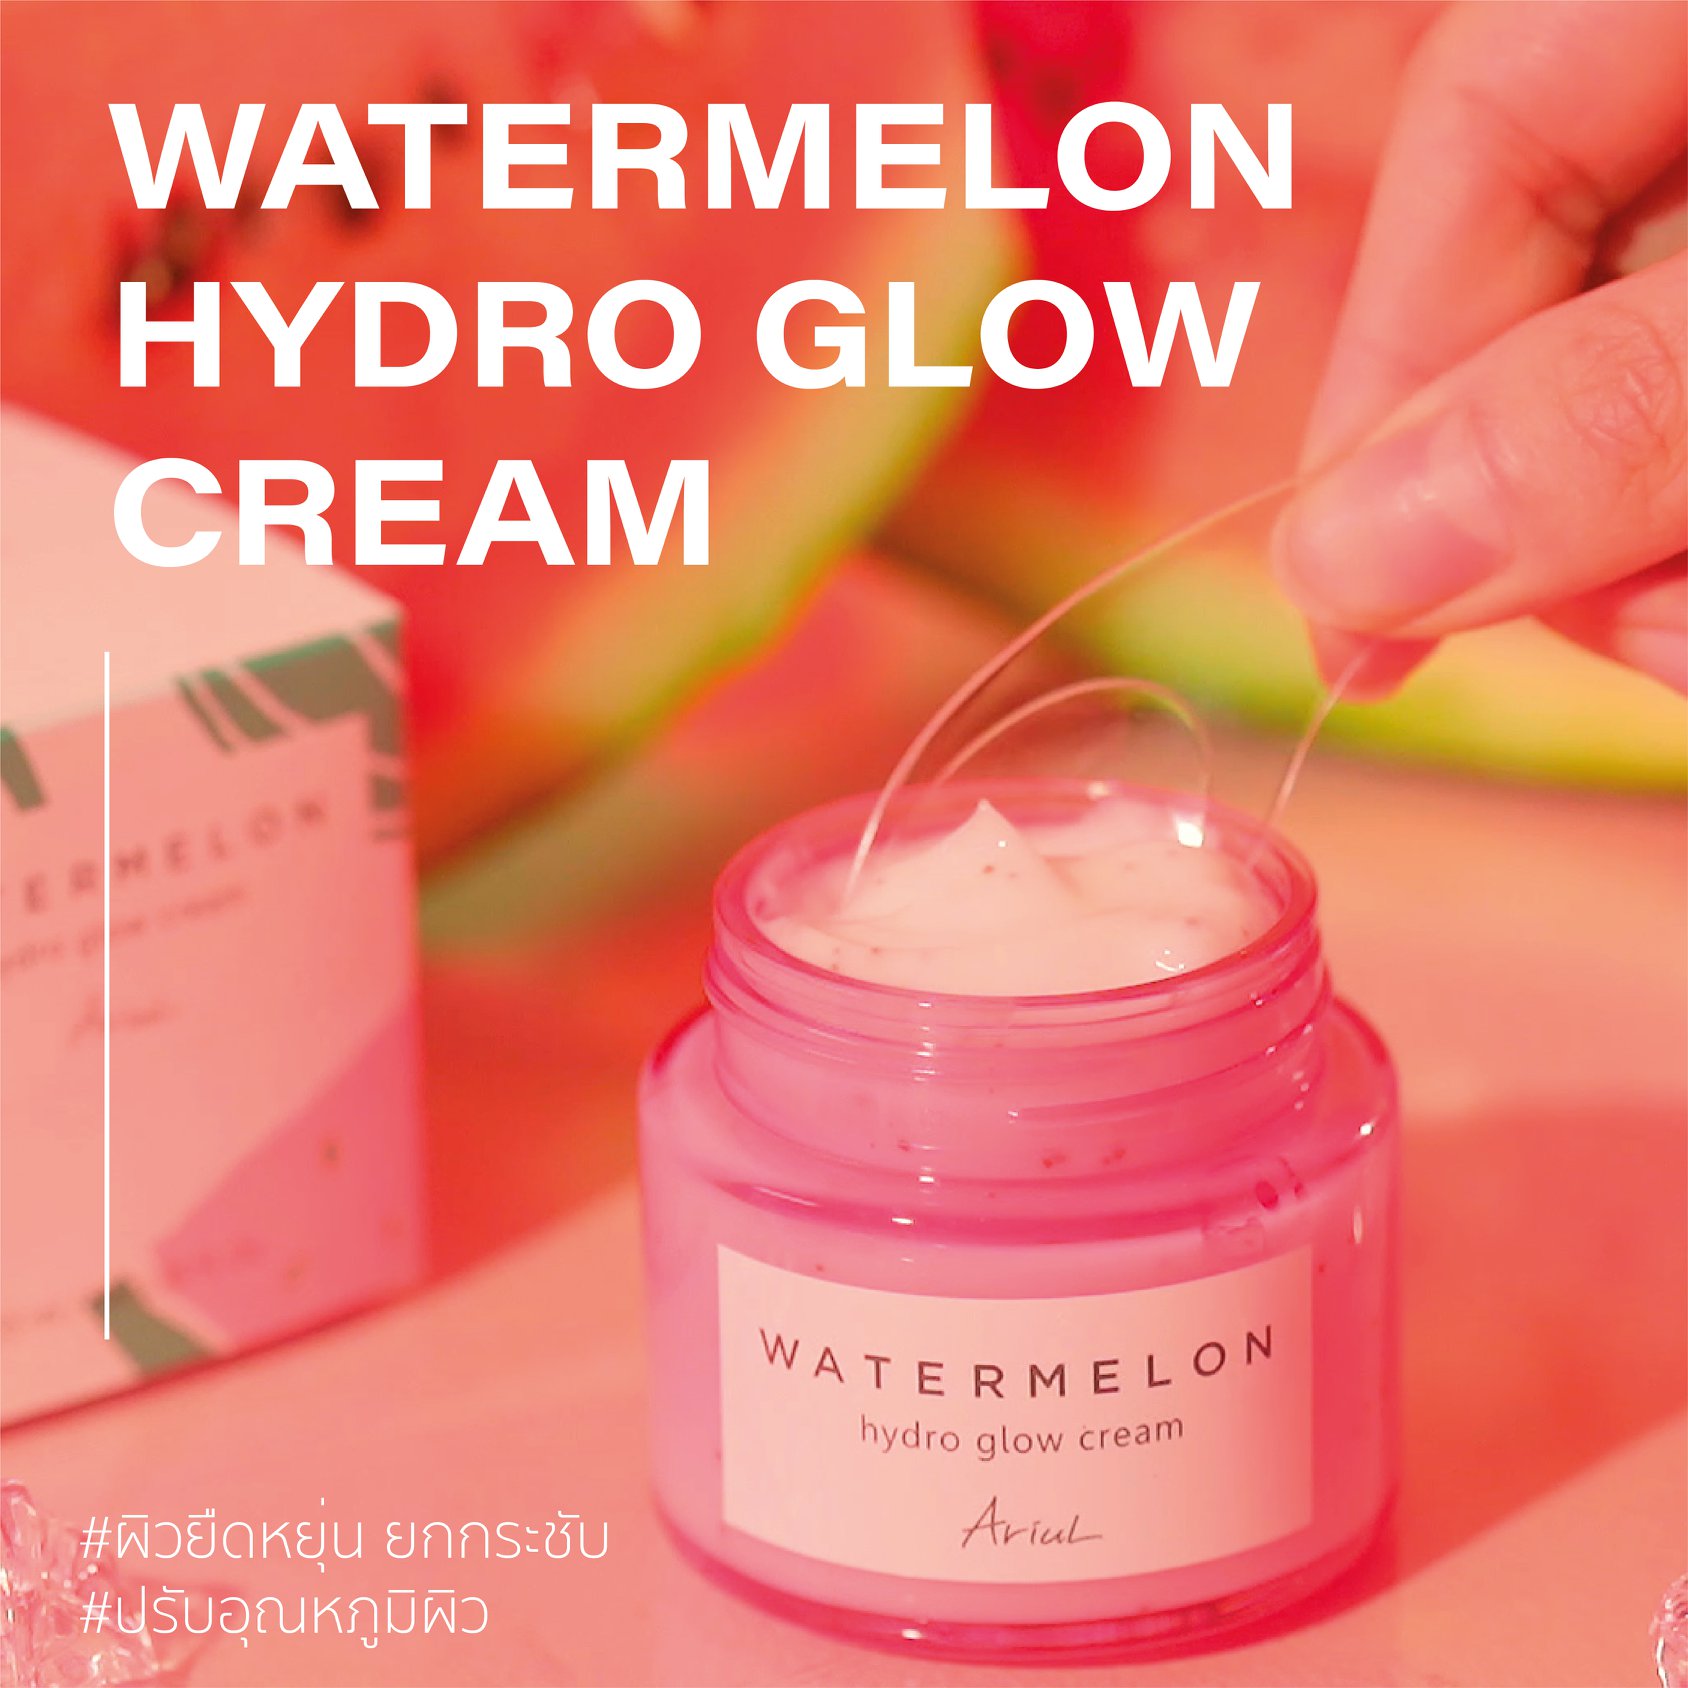 Ariul, Ariul Watermelon Hydro Glow Cream, Ariul Watermelon Hydro Glow Cream 55ml, Ariul Watermelon Hydro Glow Cream รีวิว, ครีม, ครีมแตงโม, ผิวโกลวใส, ชุ่มชื้น, รูขุมขนกระชับ, กระจ่างใส